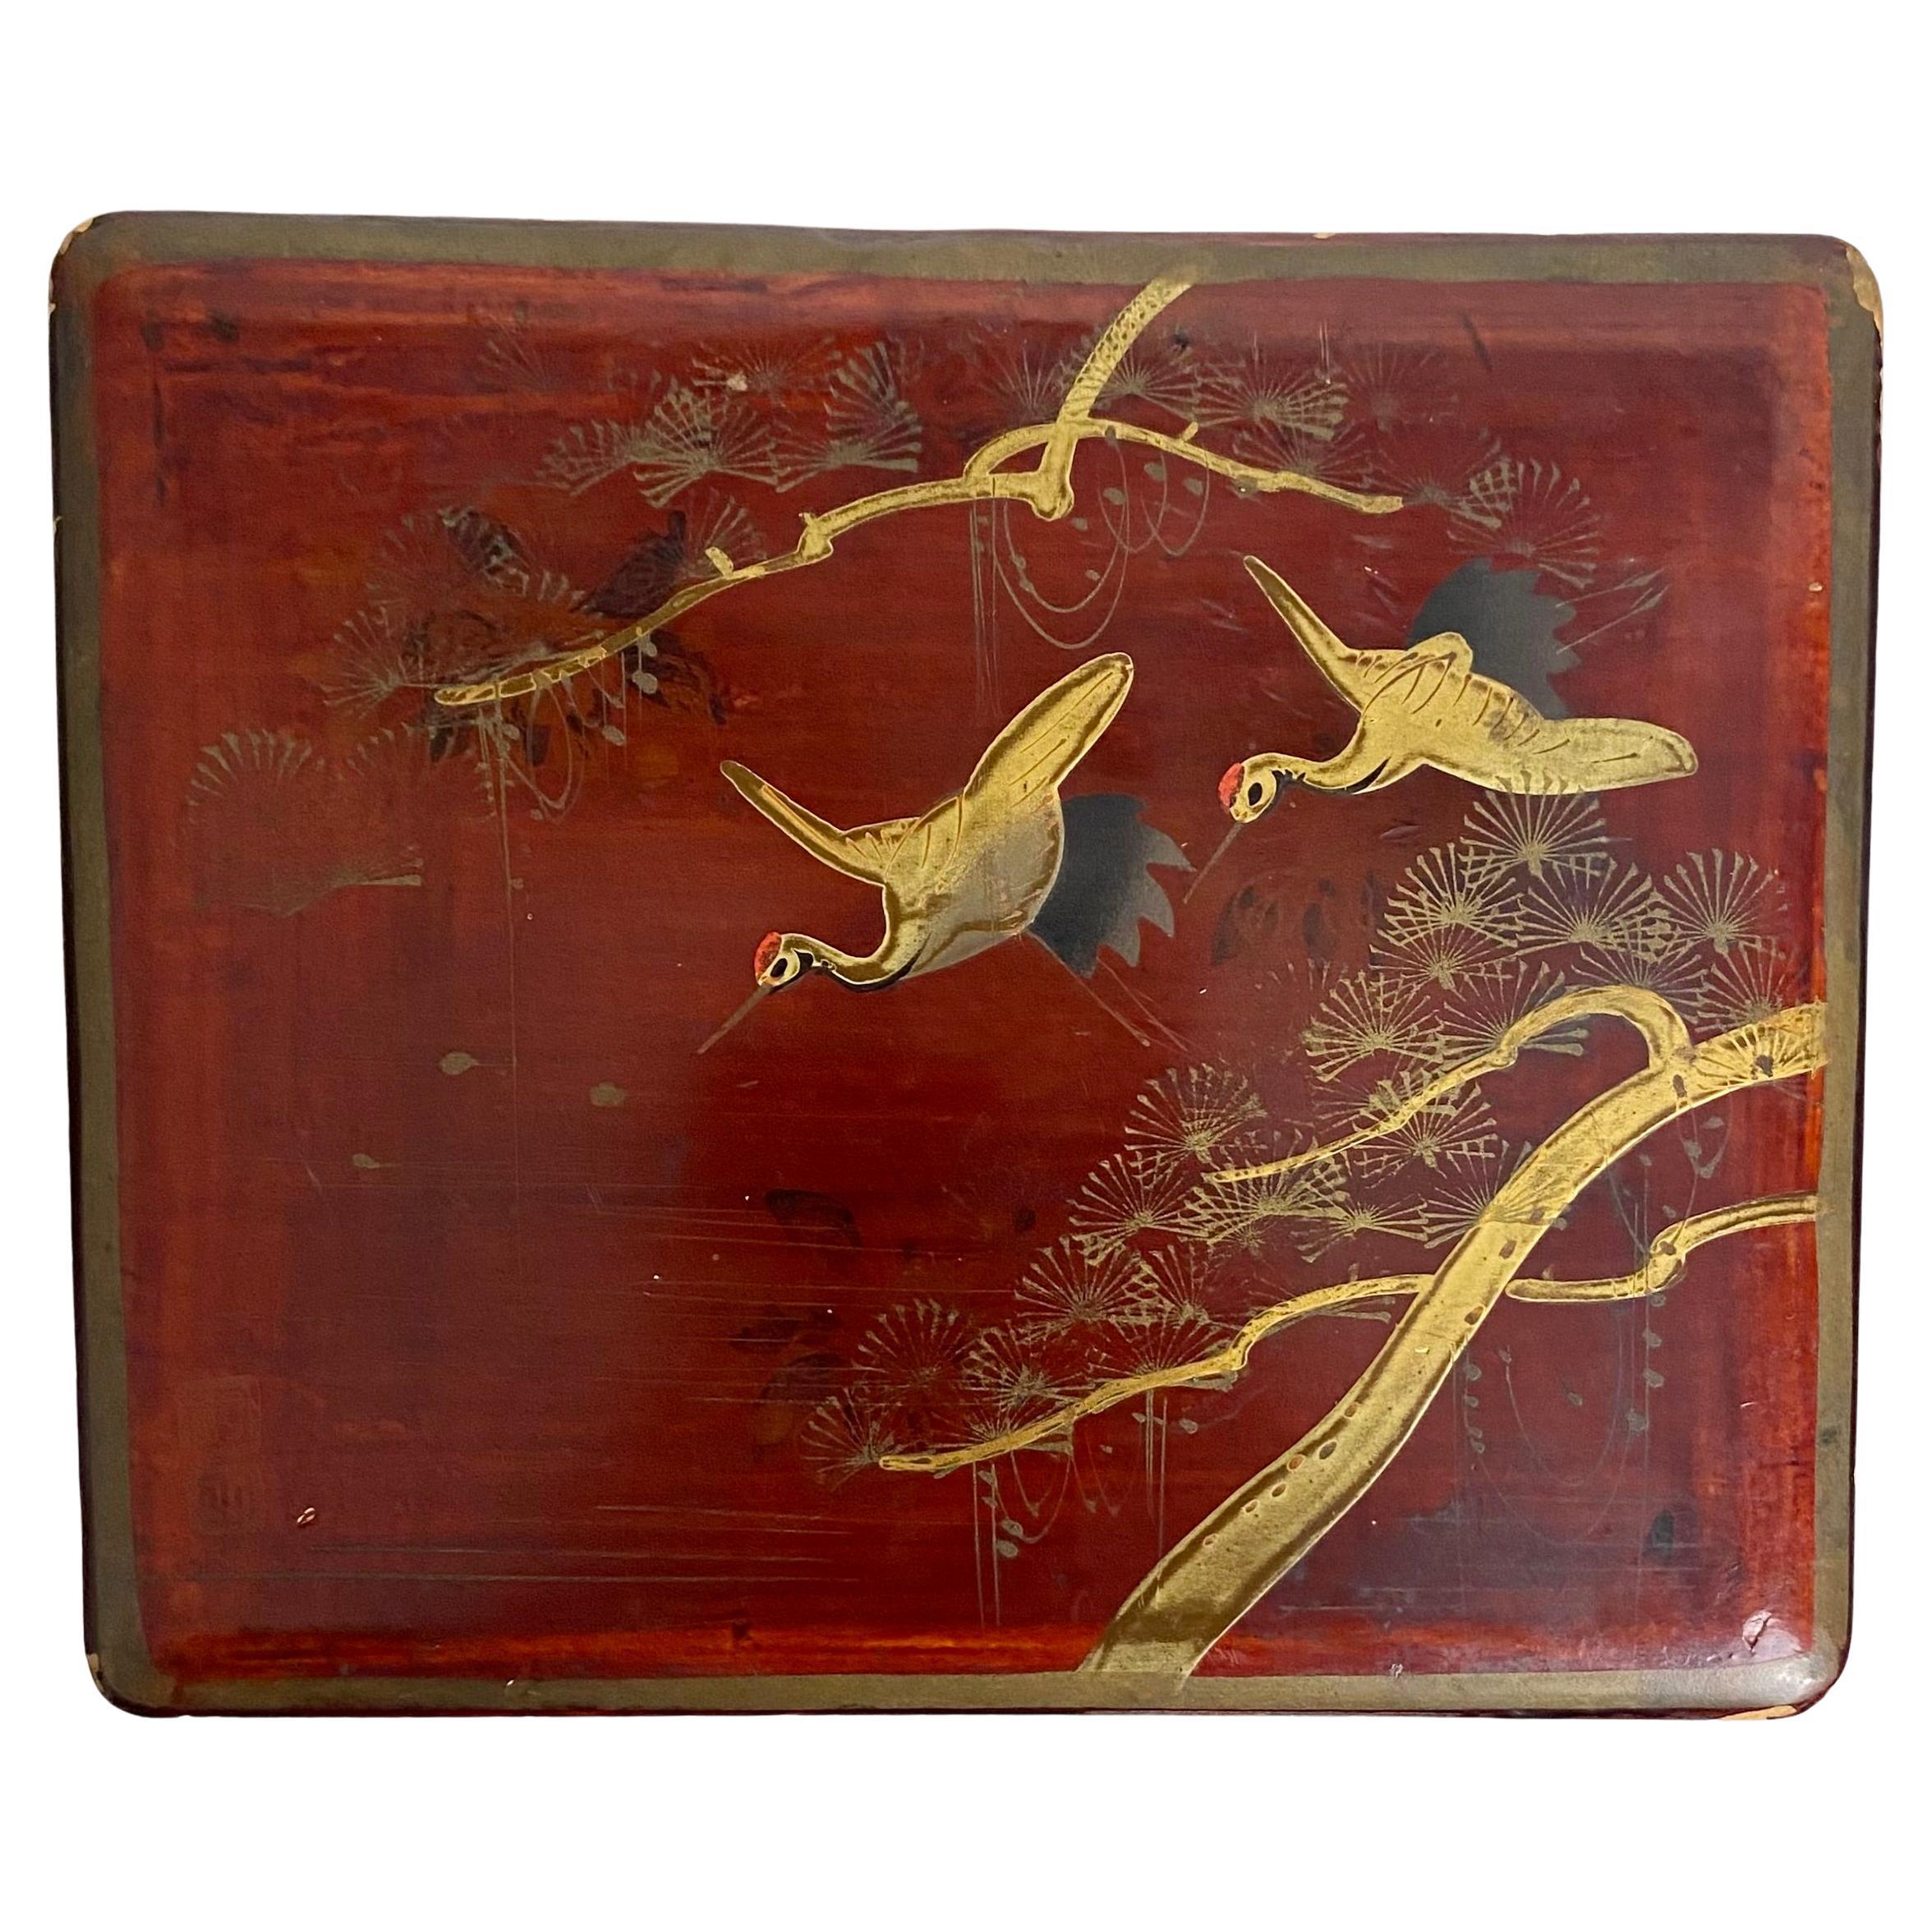 Schöne japanische Kiste aus rot lackiertem Holz.
Der Deckel ist mit goldenen Reihern und blühenden Zweigen verziert und vom Künstler signiert. Um die Schachtel herum sind schwarze Blumen gemalt.
Die Innenseite der Schachtel ist mit einer schwarzen